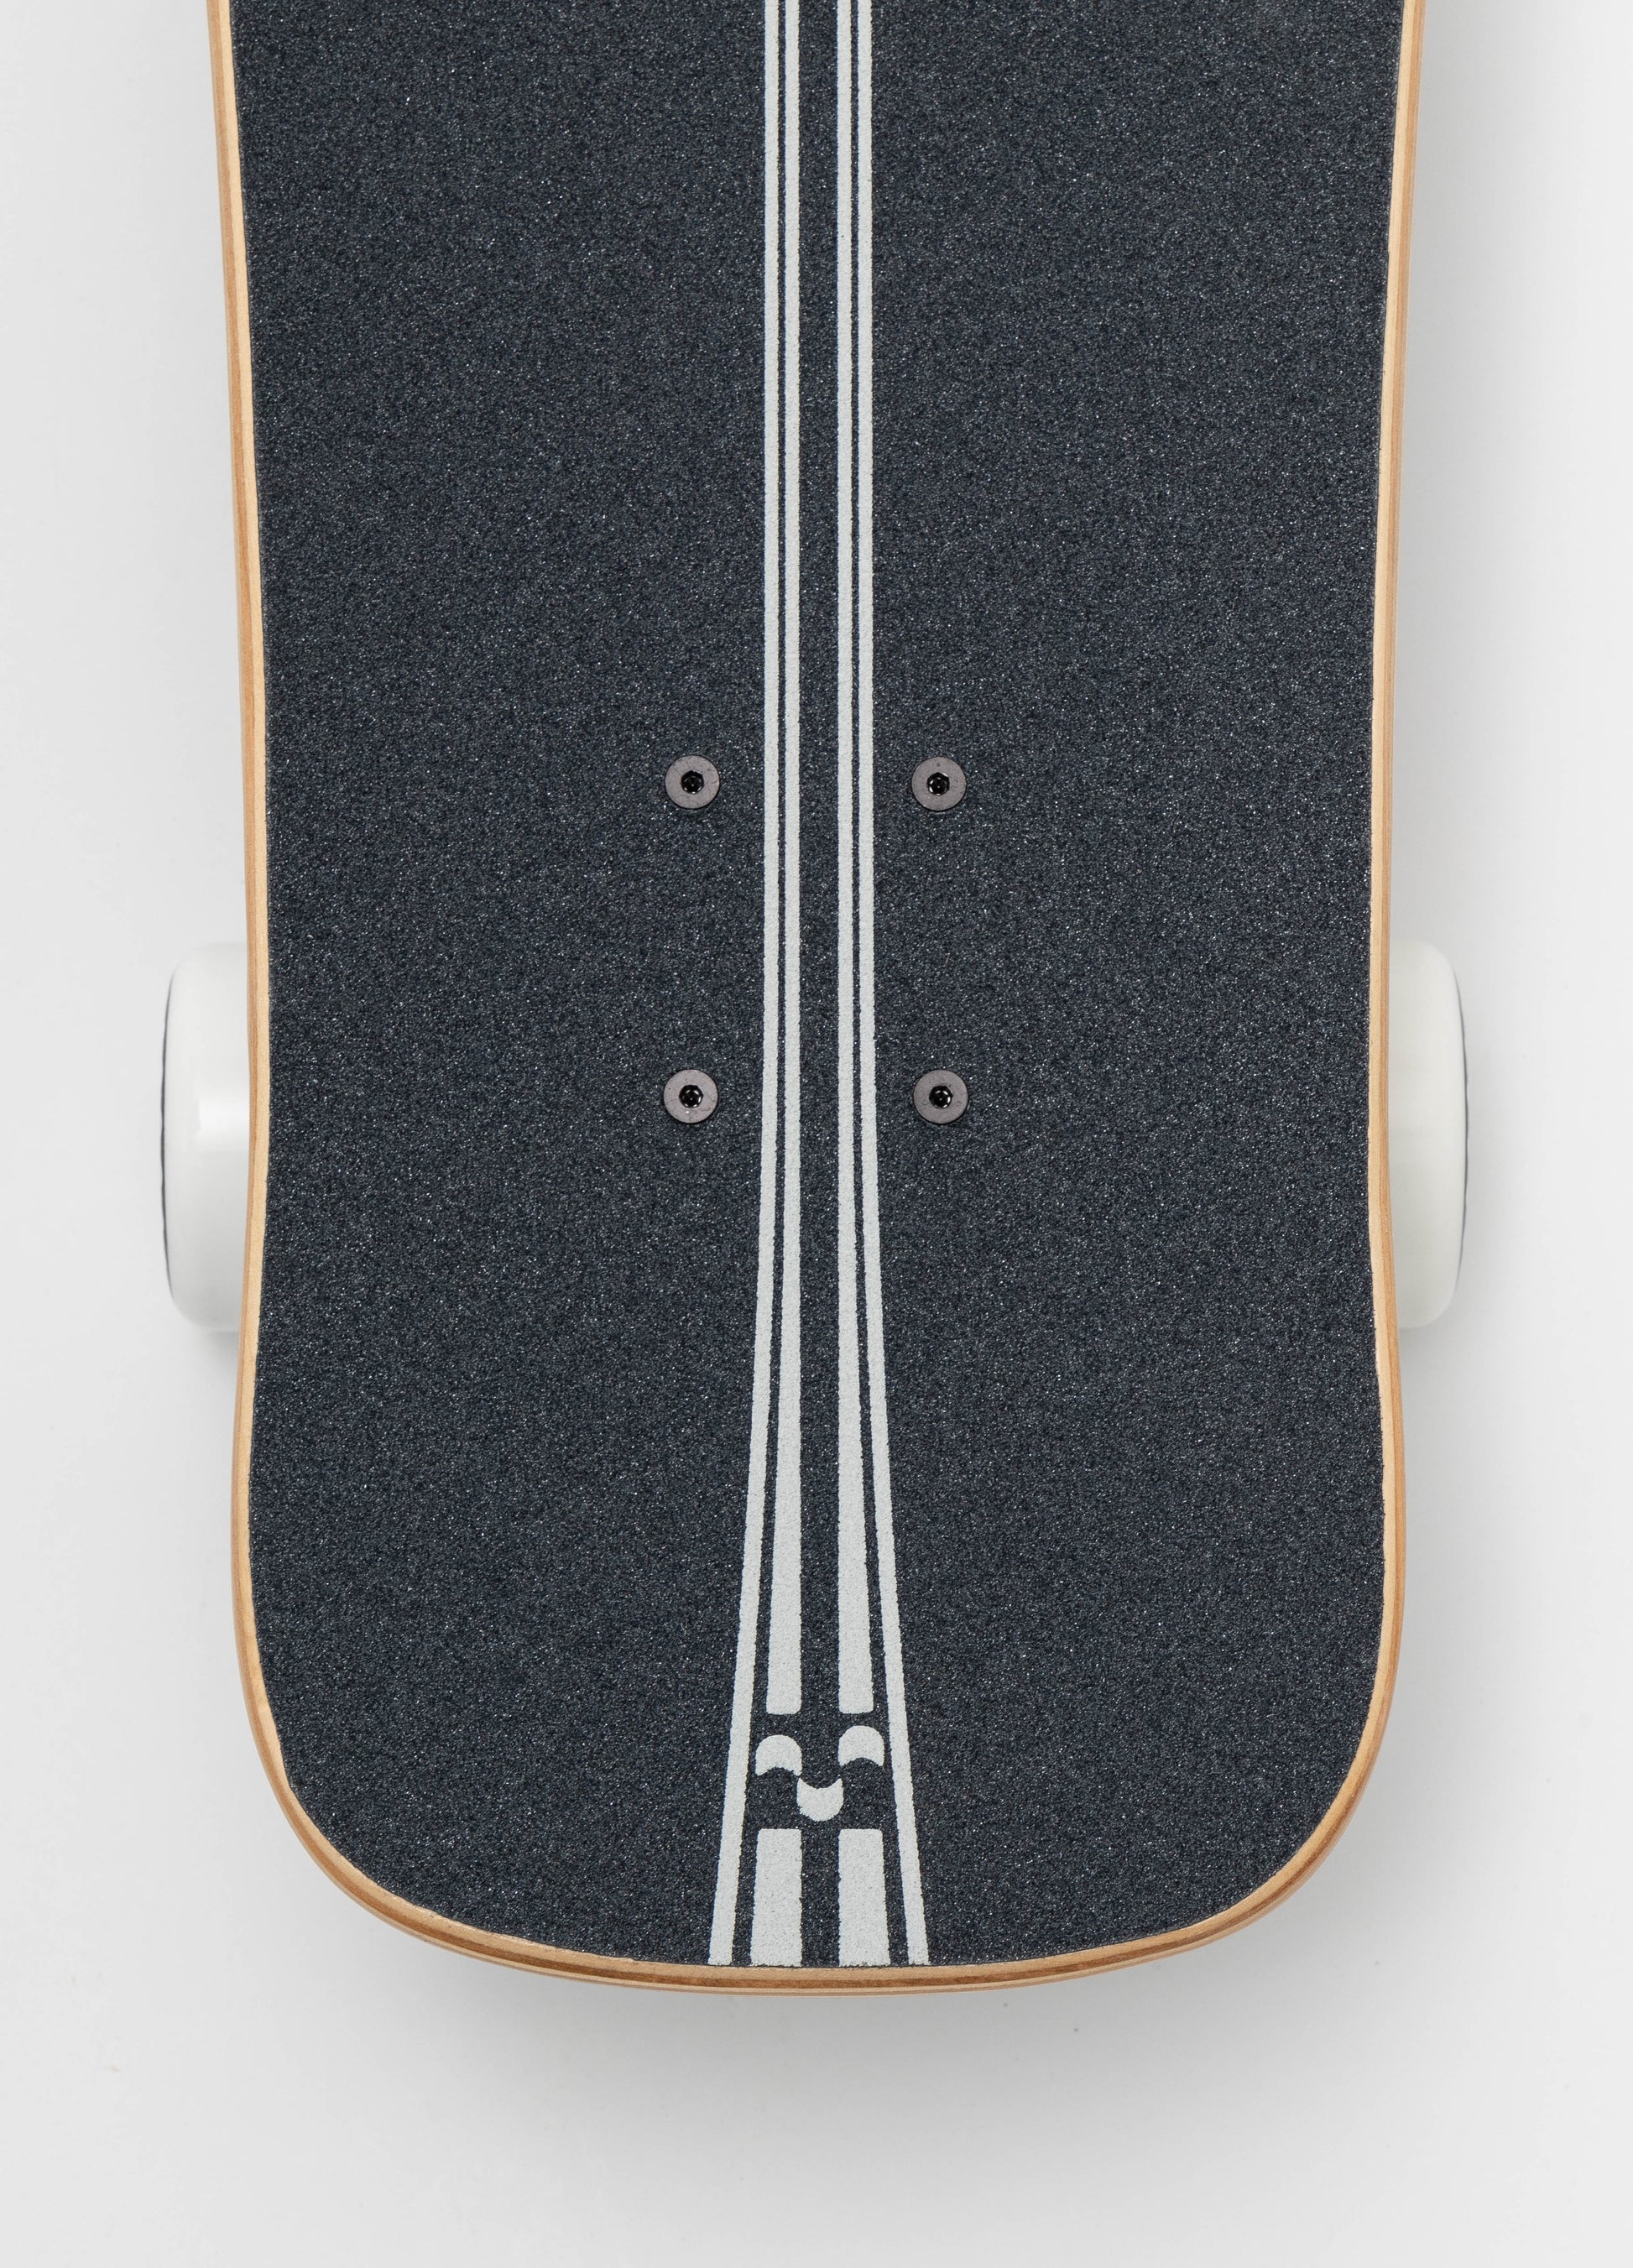 Ultimate Boards 'Solid' Surfskate - SkatebruhSG